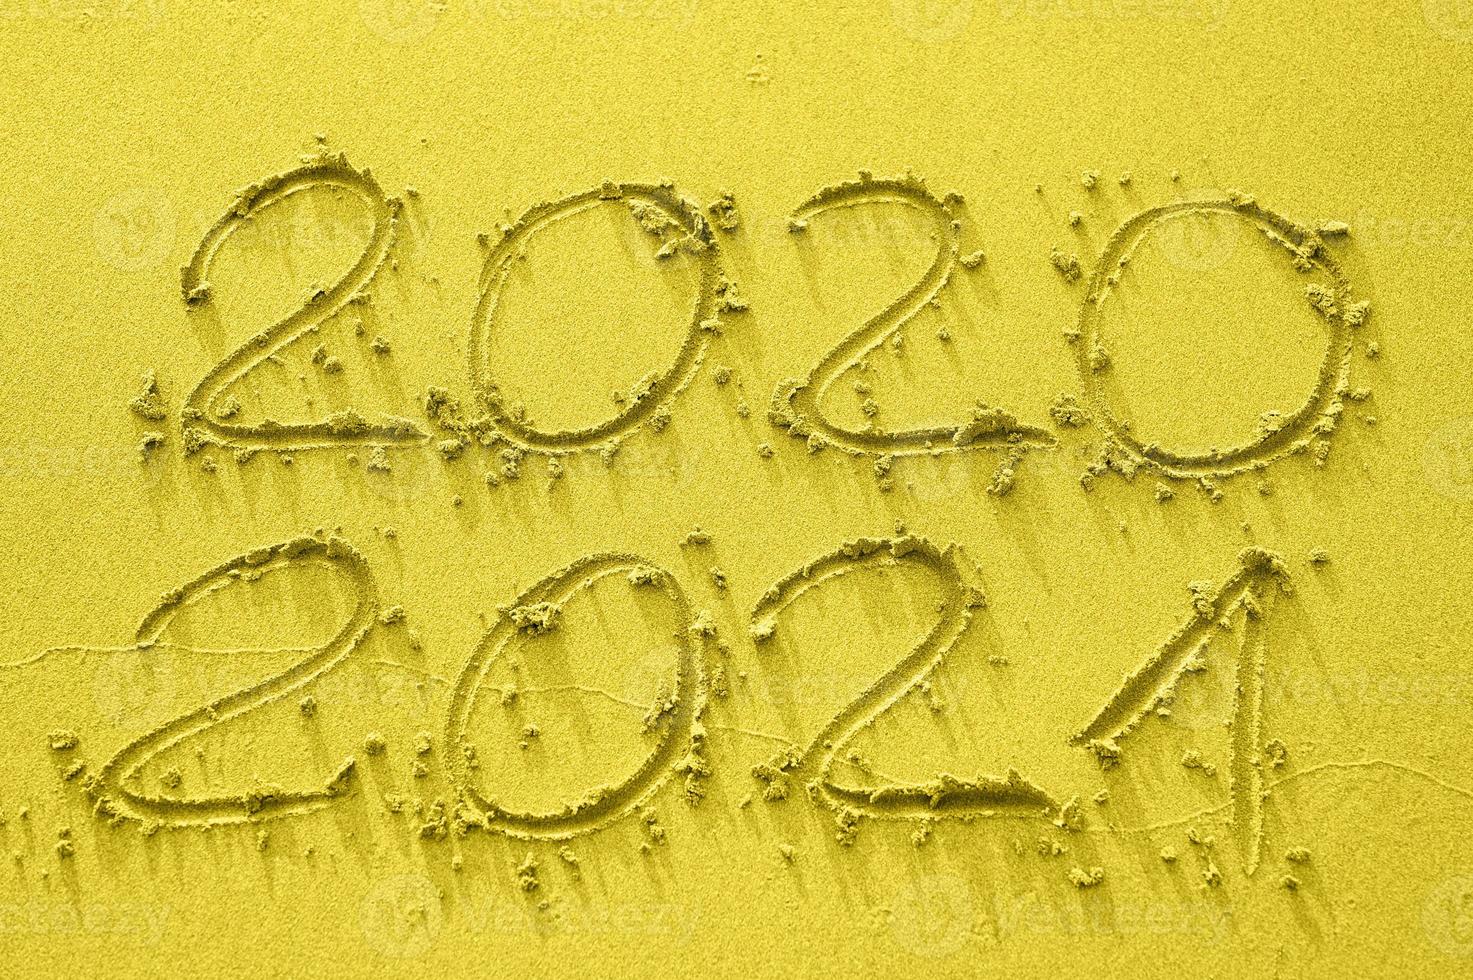 inscripción en la arena dorada 2020 y 2021, entonada en el color de tendencia del año 2021 foto